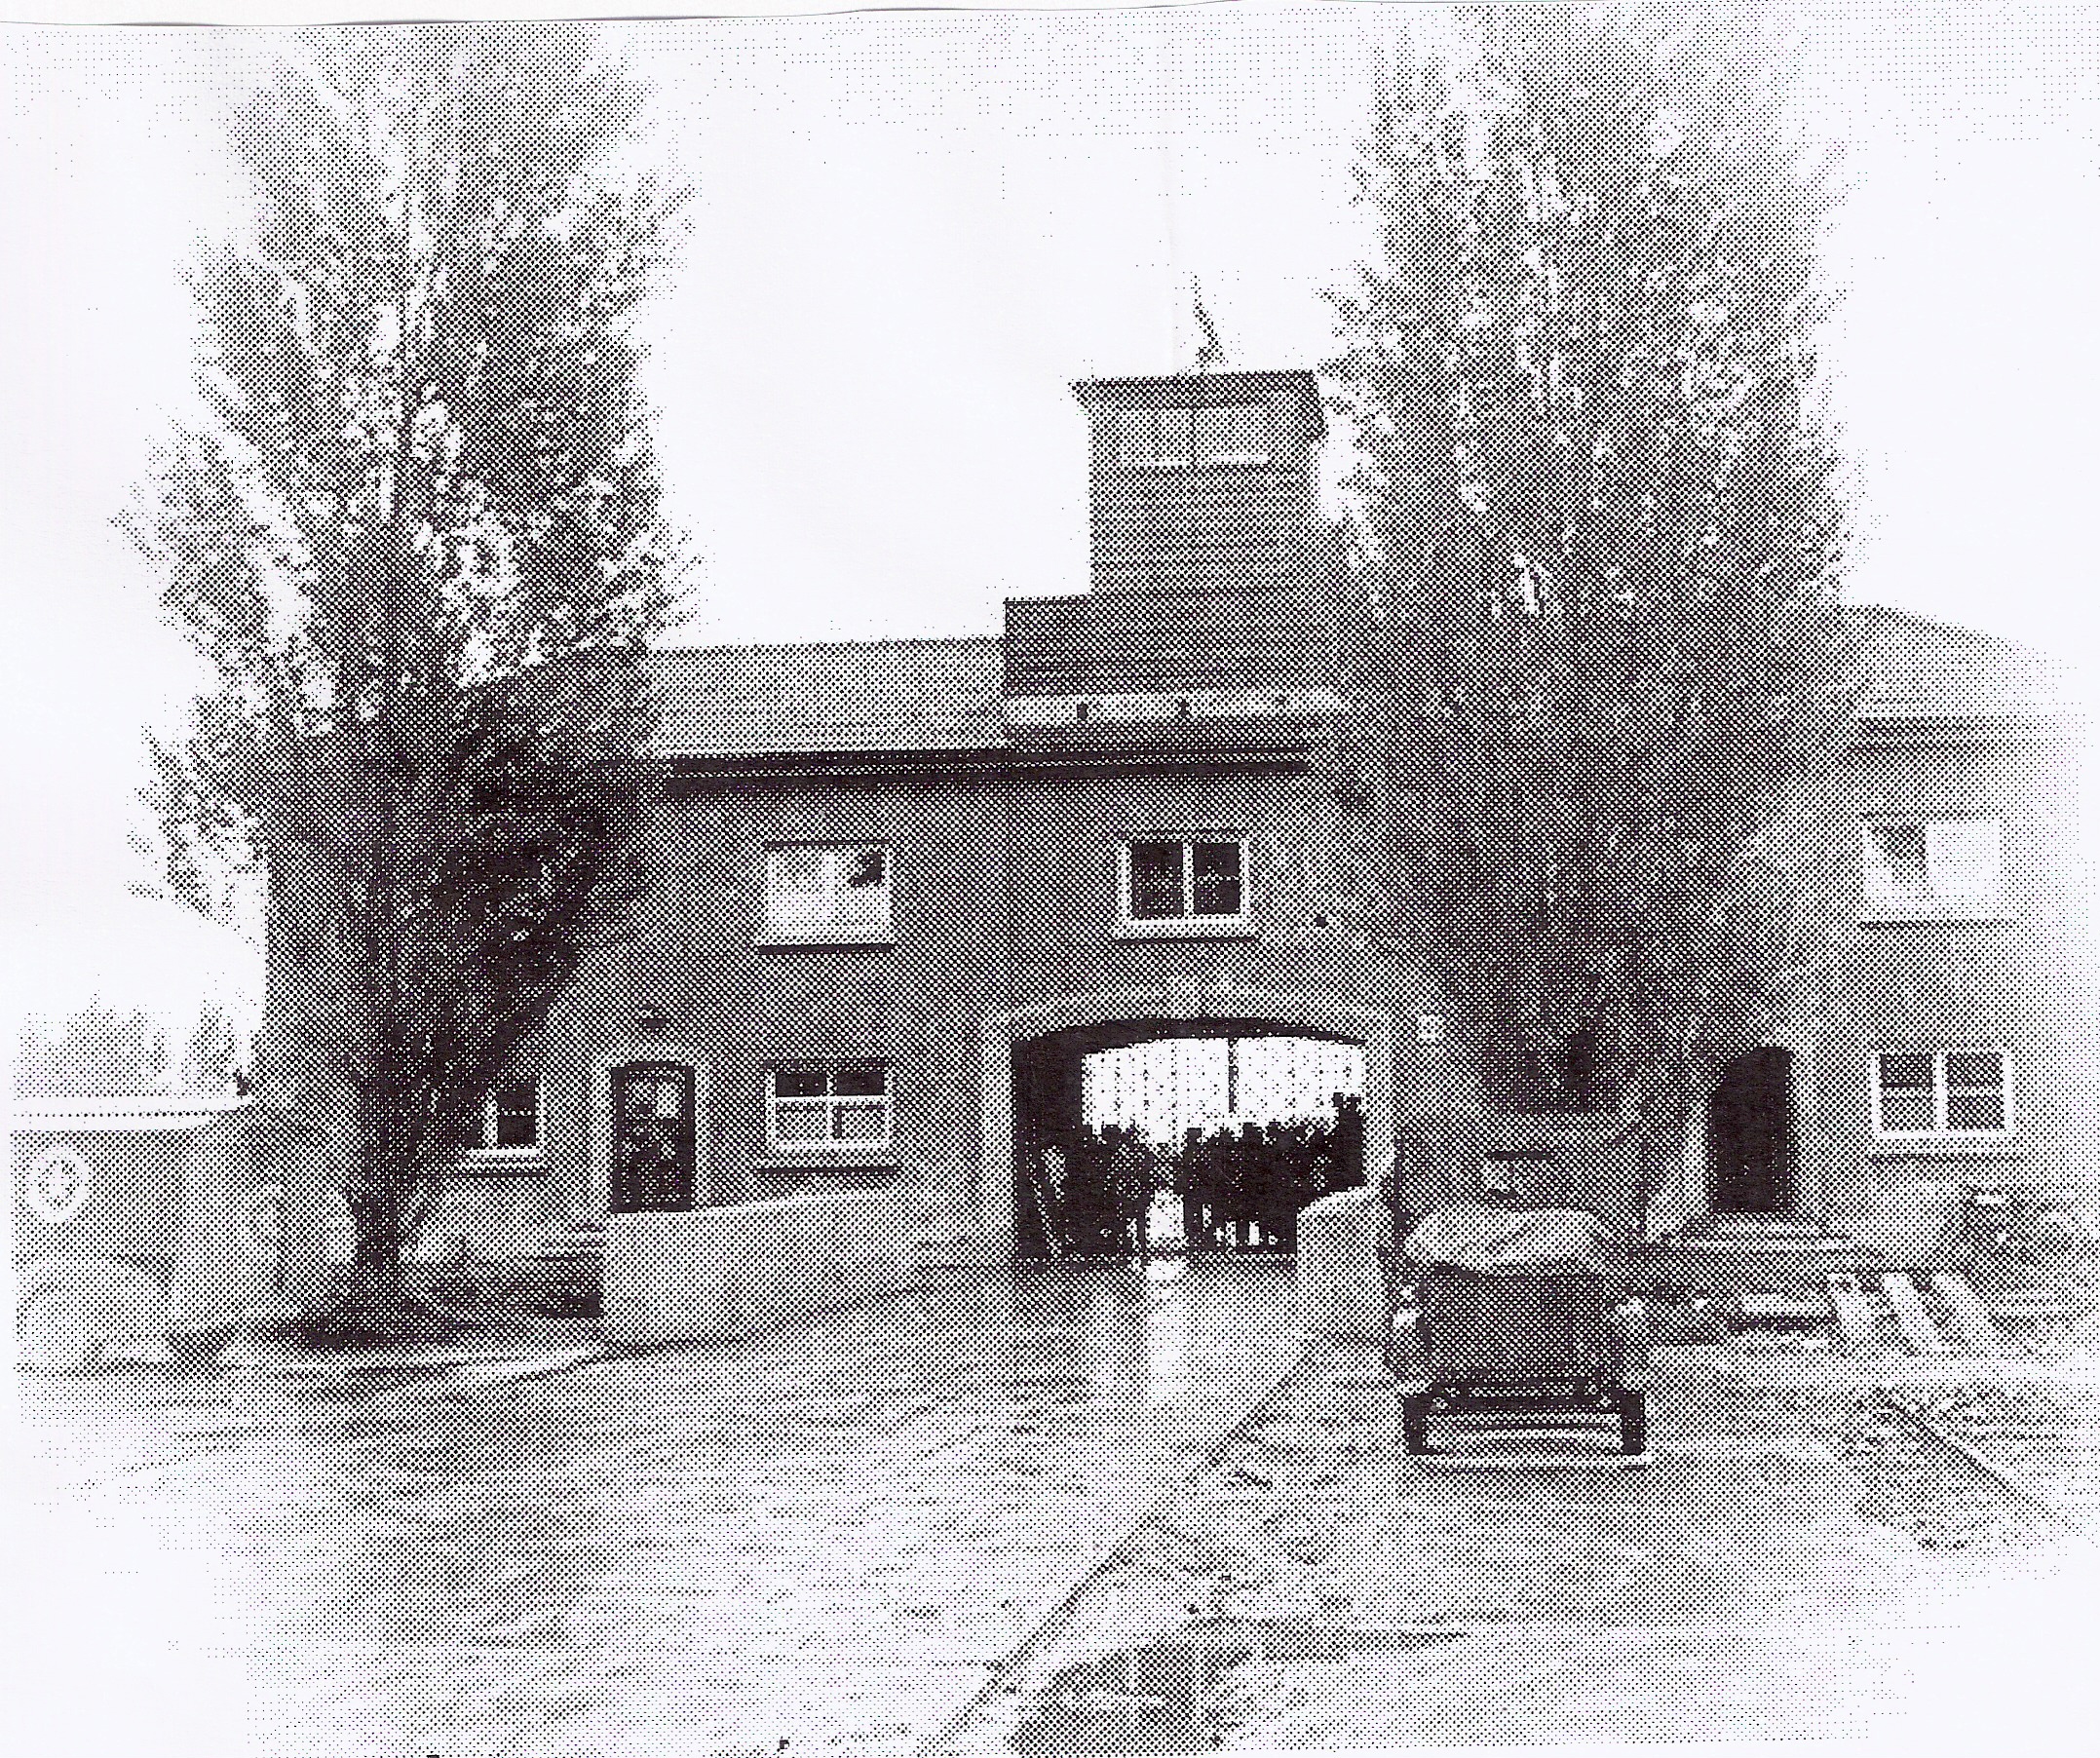 Het concentratiekamp van Dachau